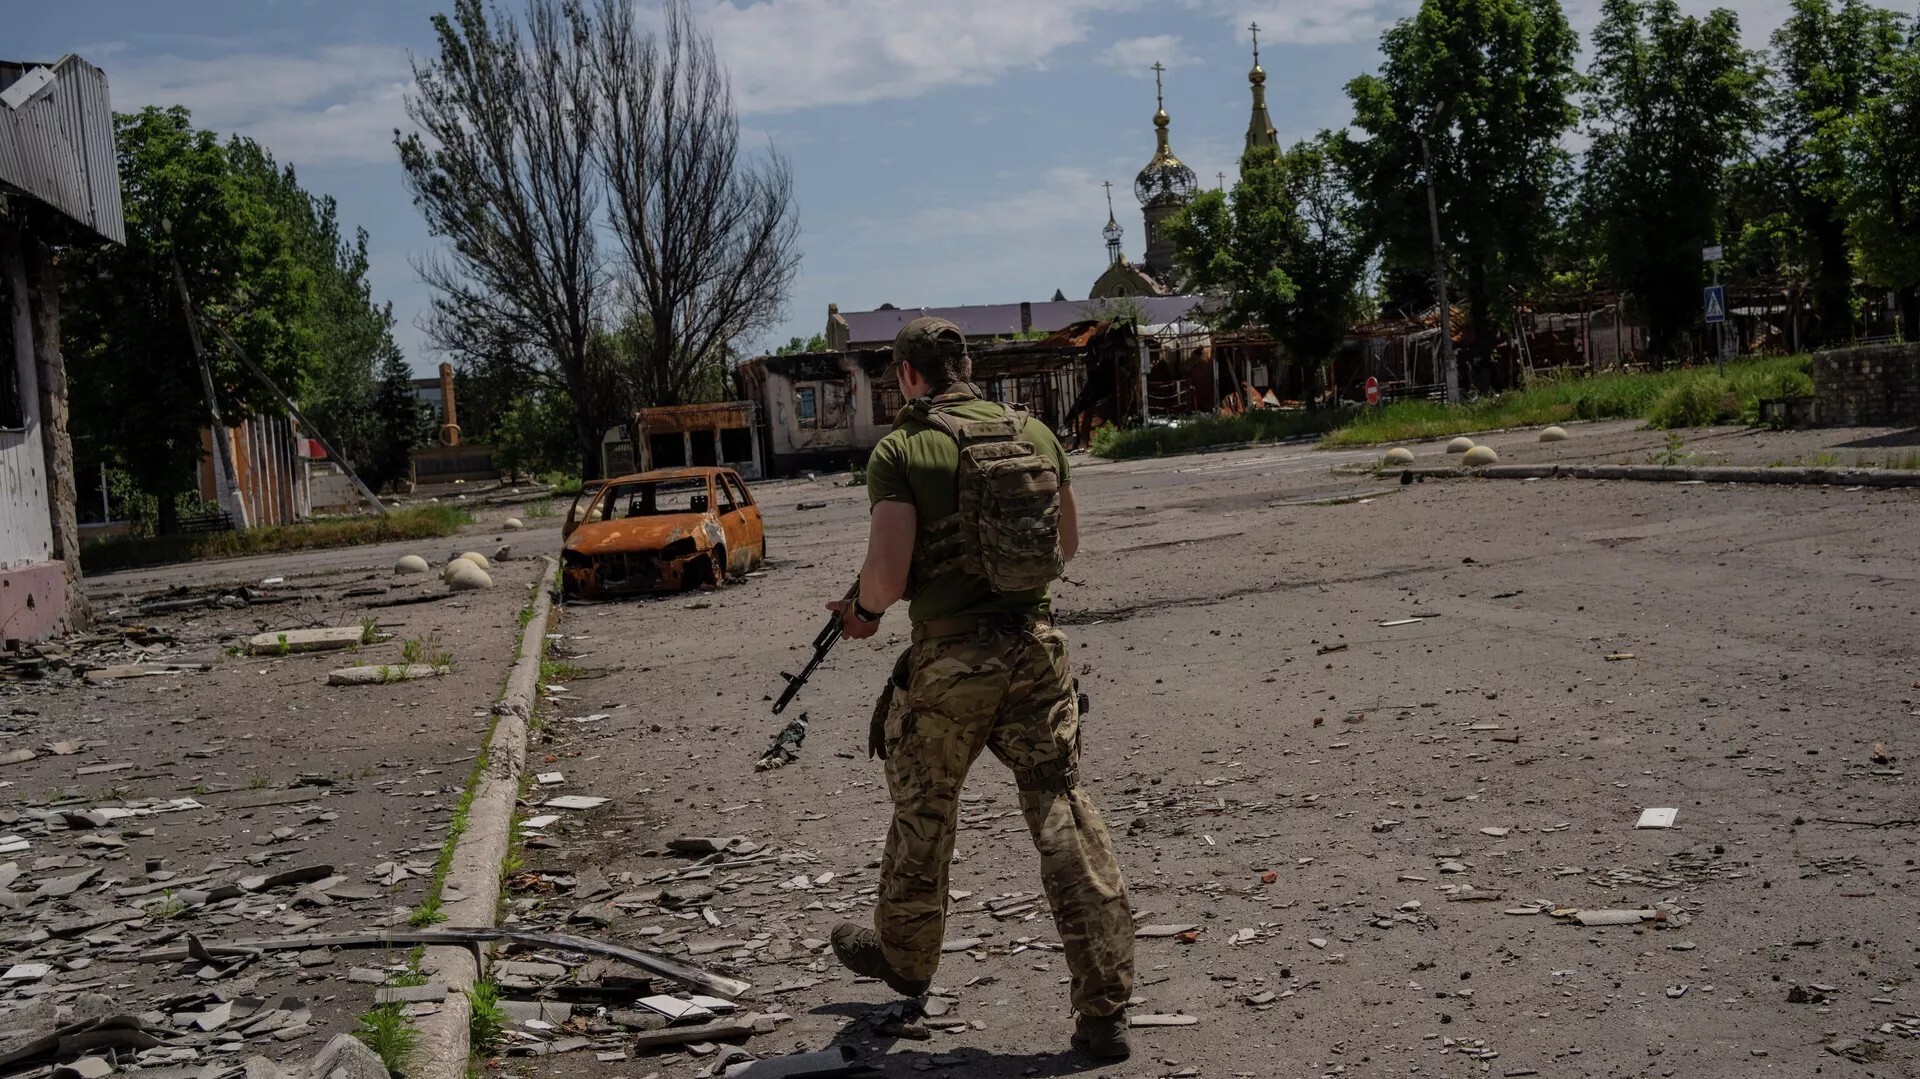 الدفاع الروسية: المسلحون الأوكرانيون يفخخون المصانع ويحتجزون المدنيين في أقبيتها